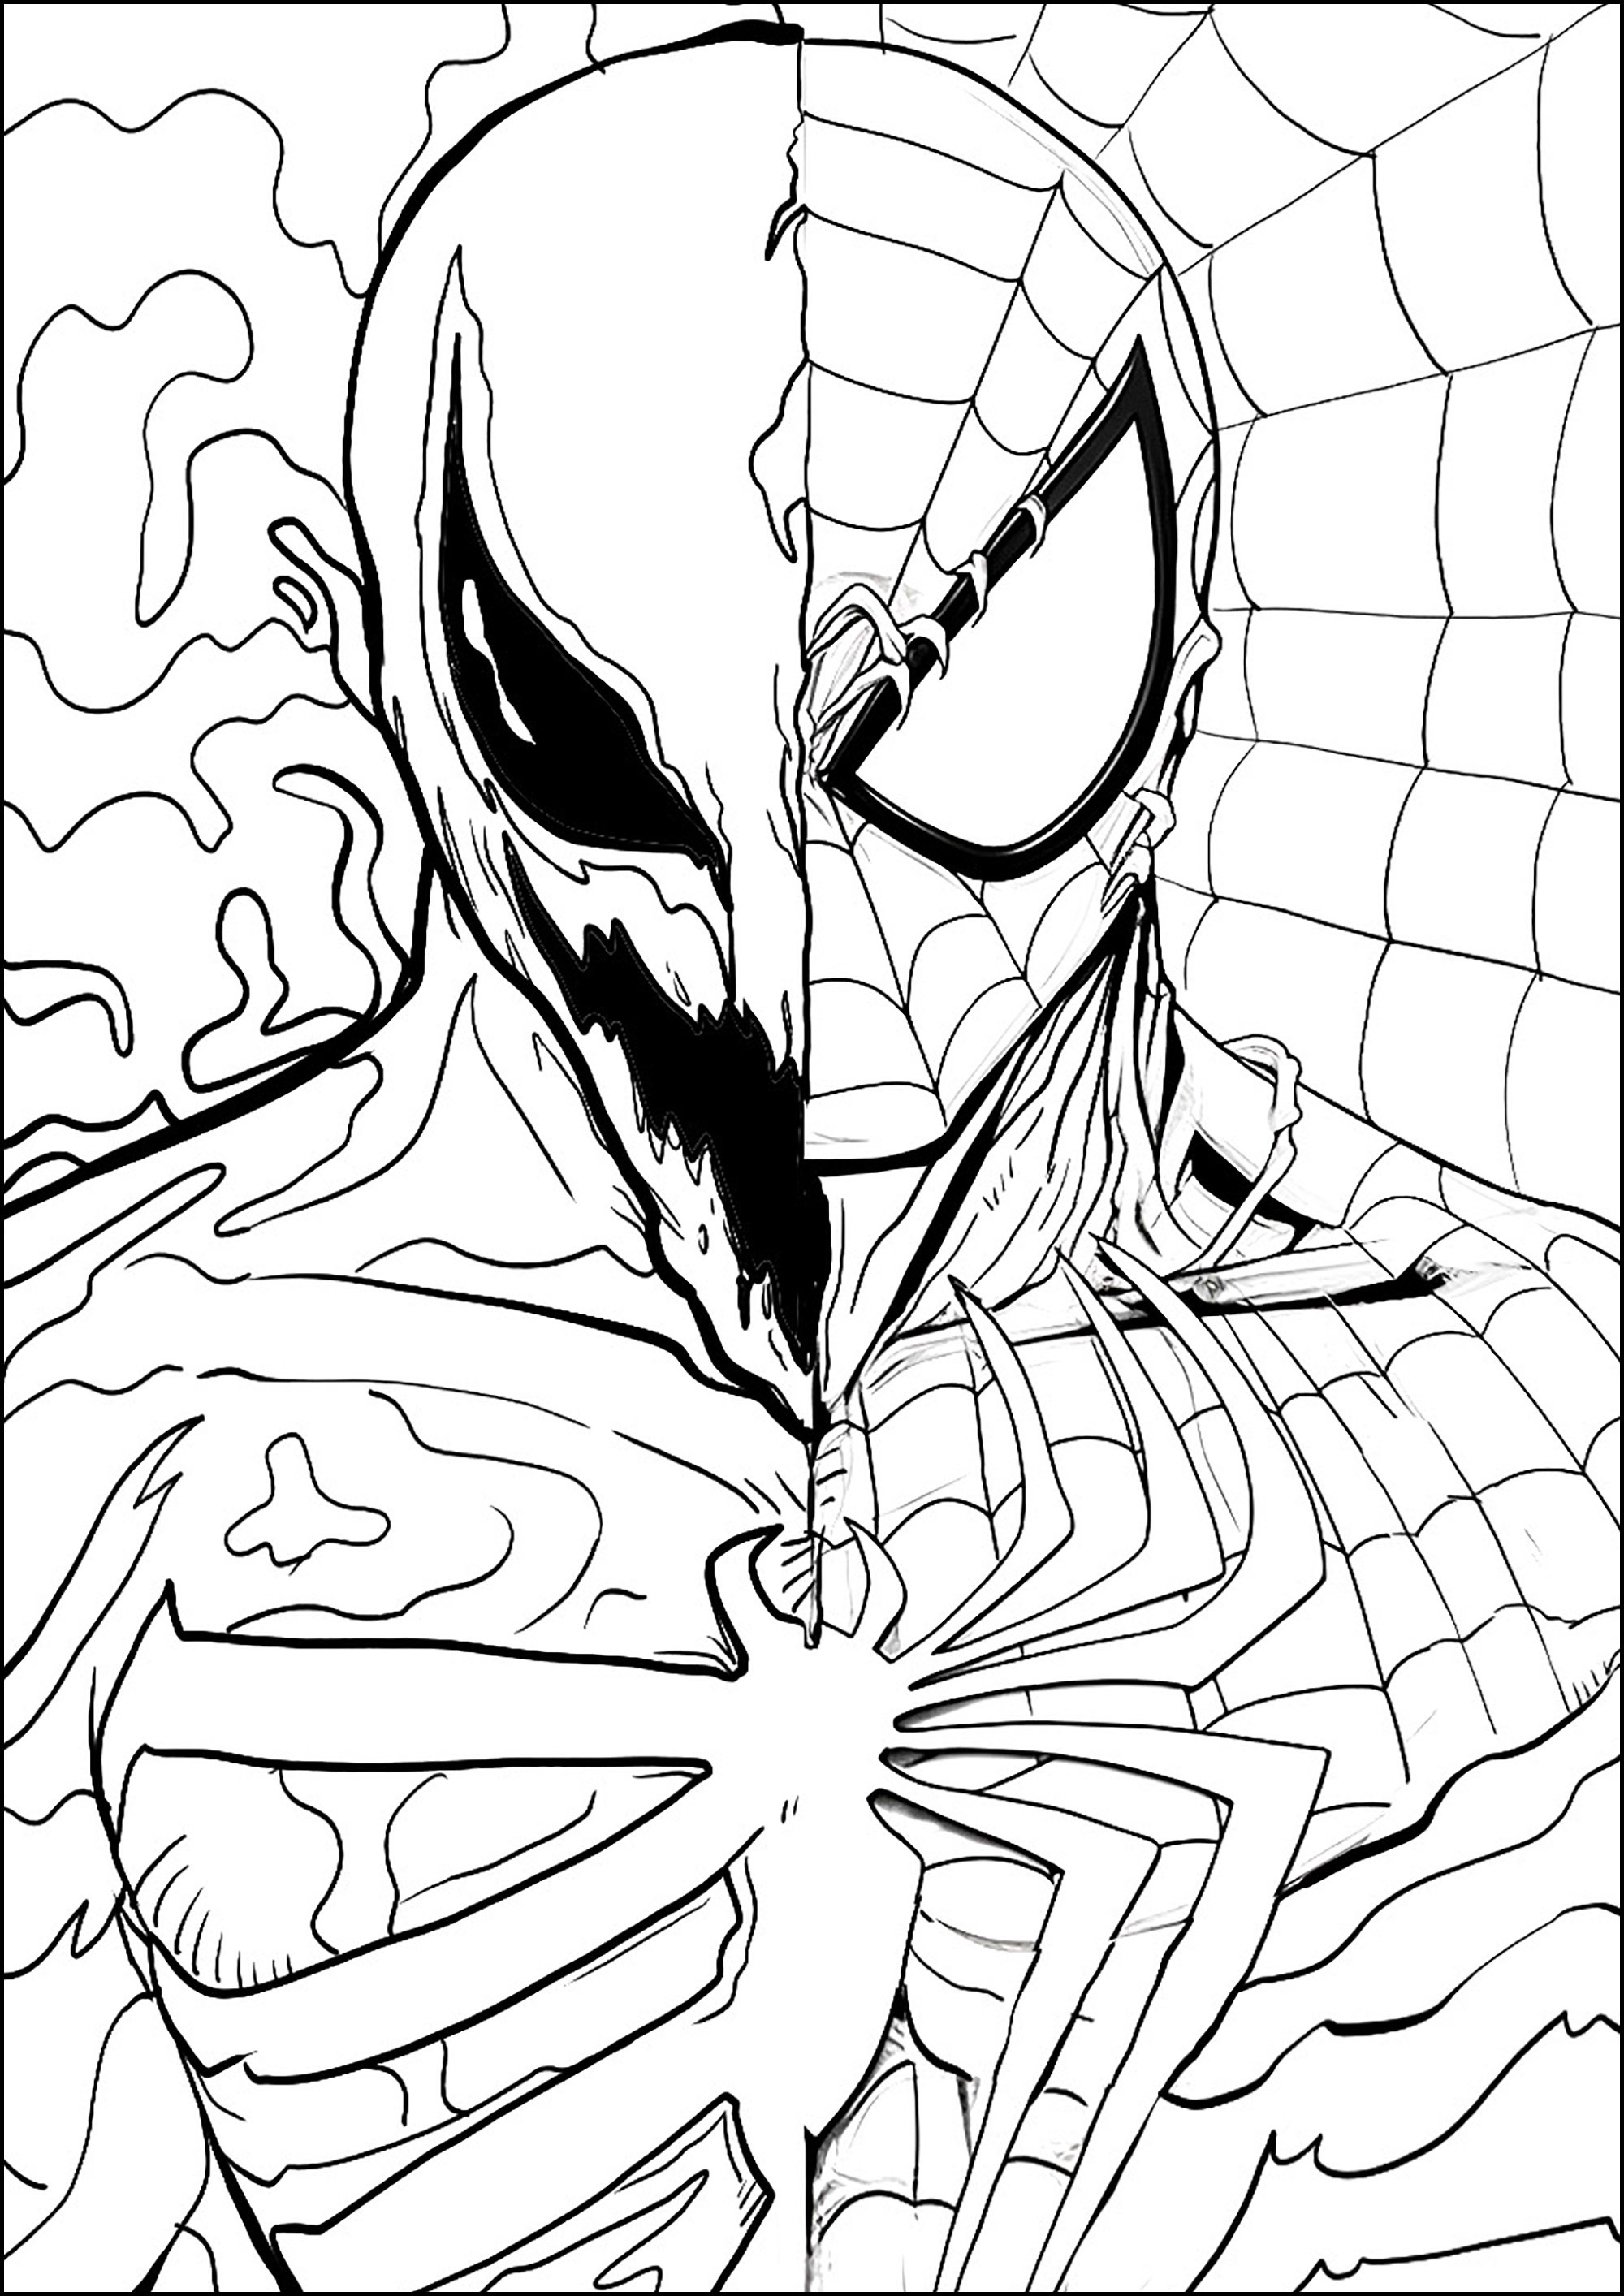 Zeichnung mit Venom und Spider-Man